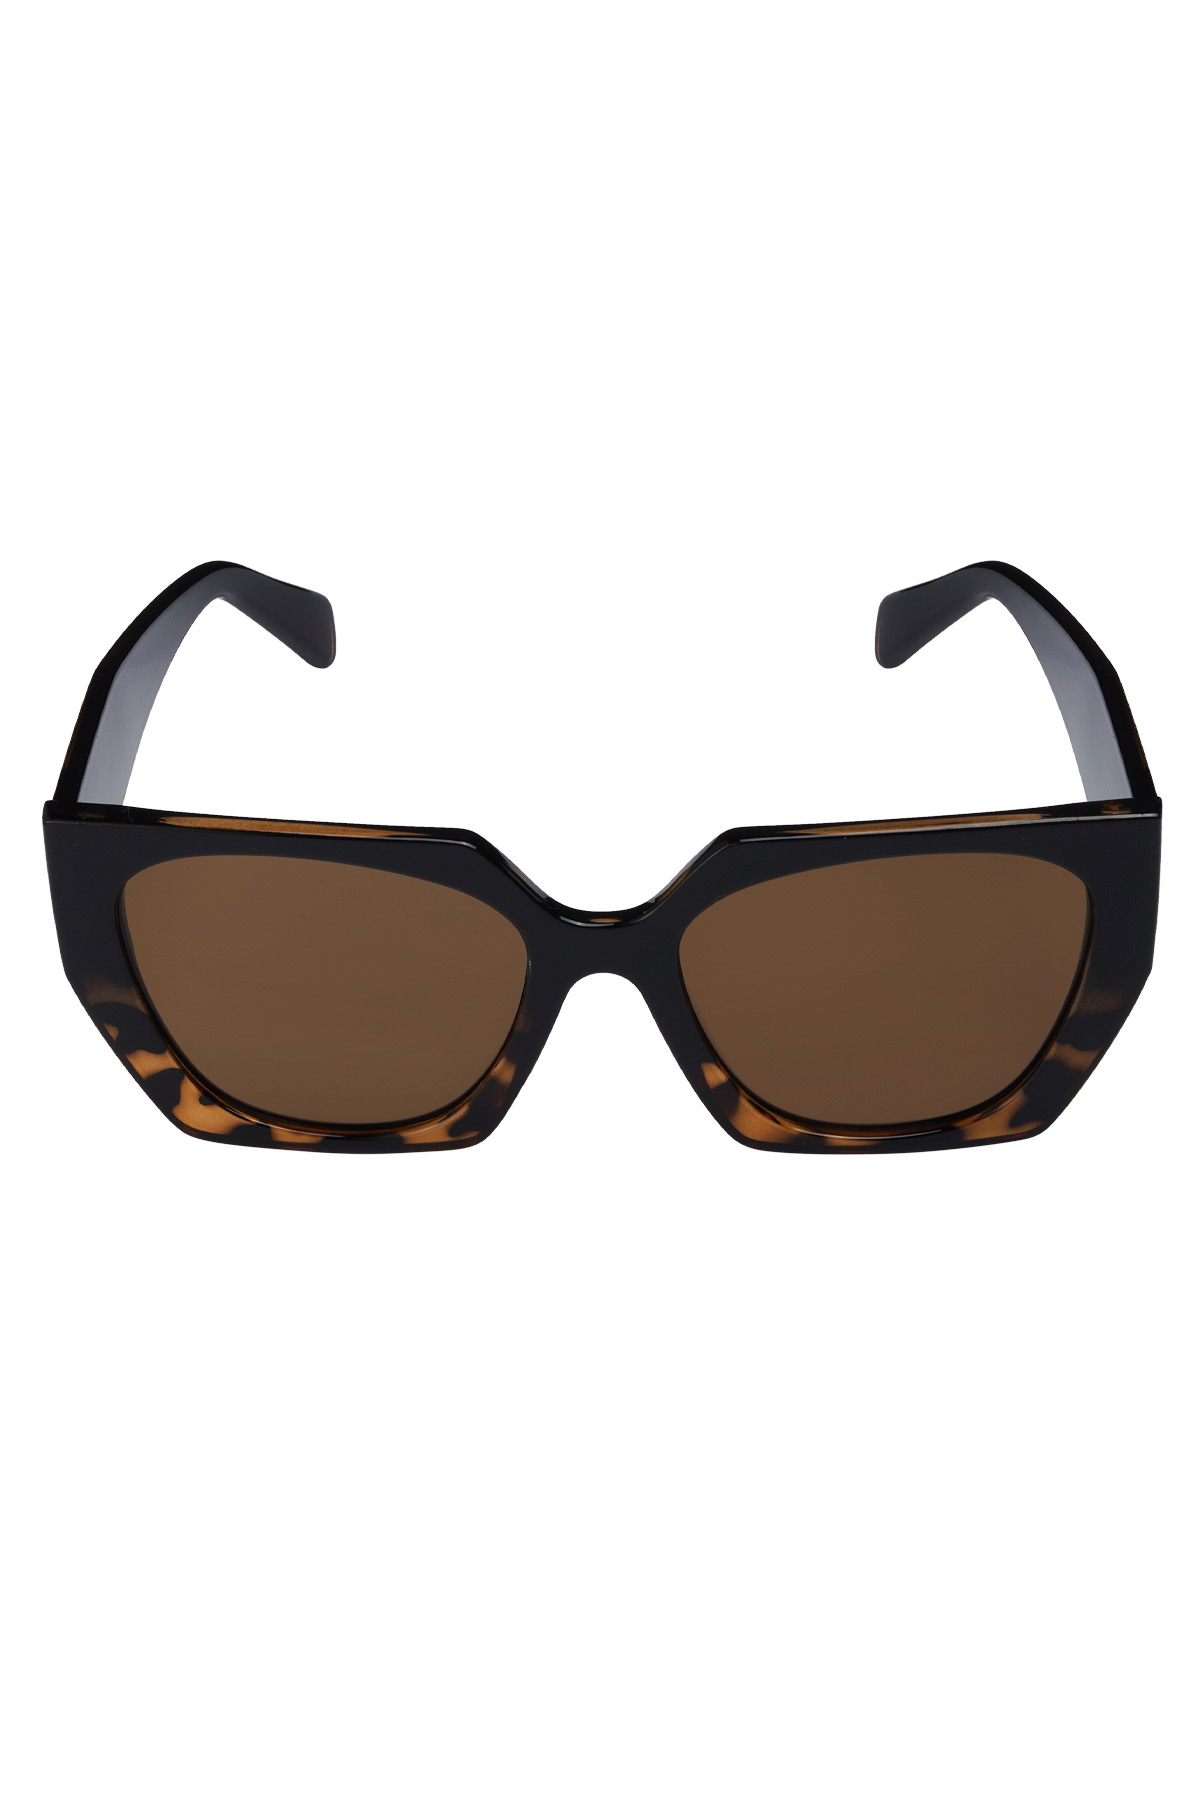 Trendige eckige Sonnenbrille - braun schwarz 